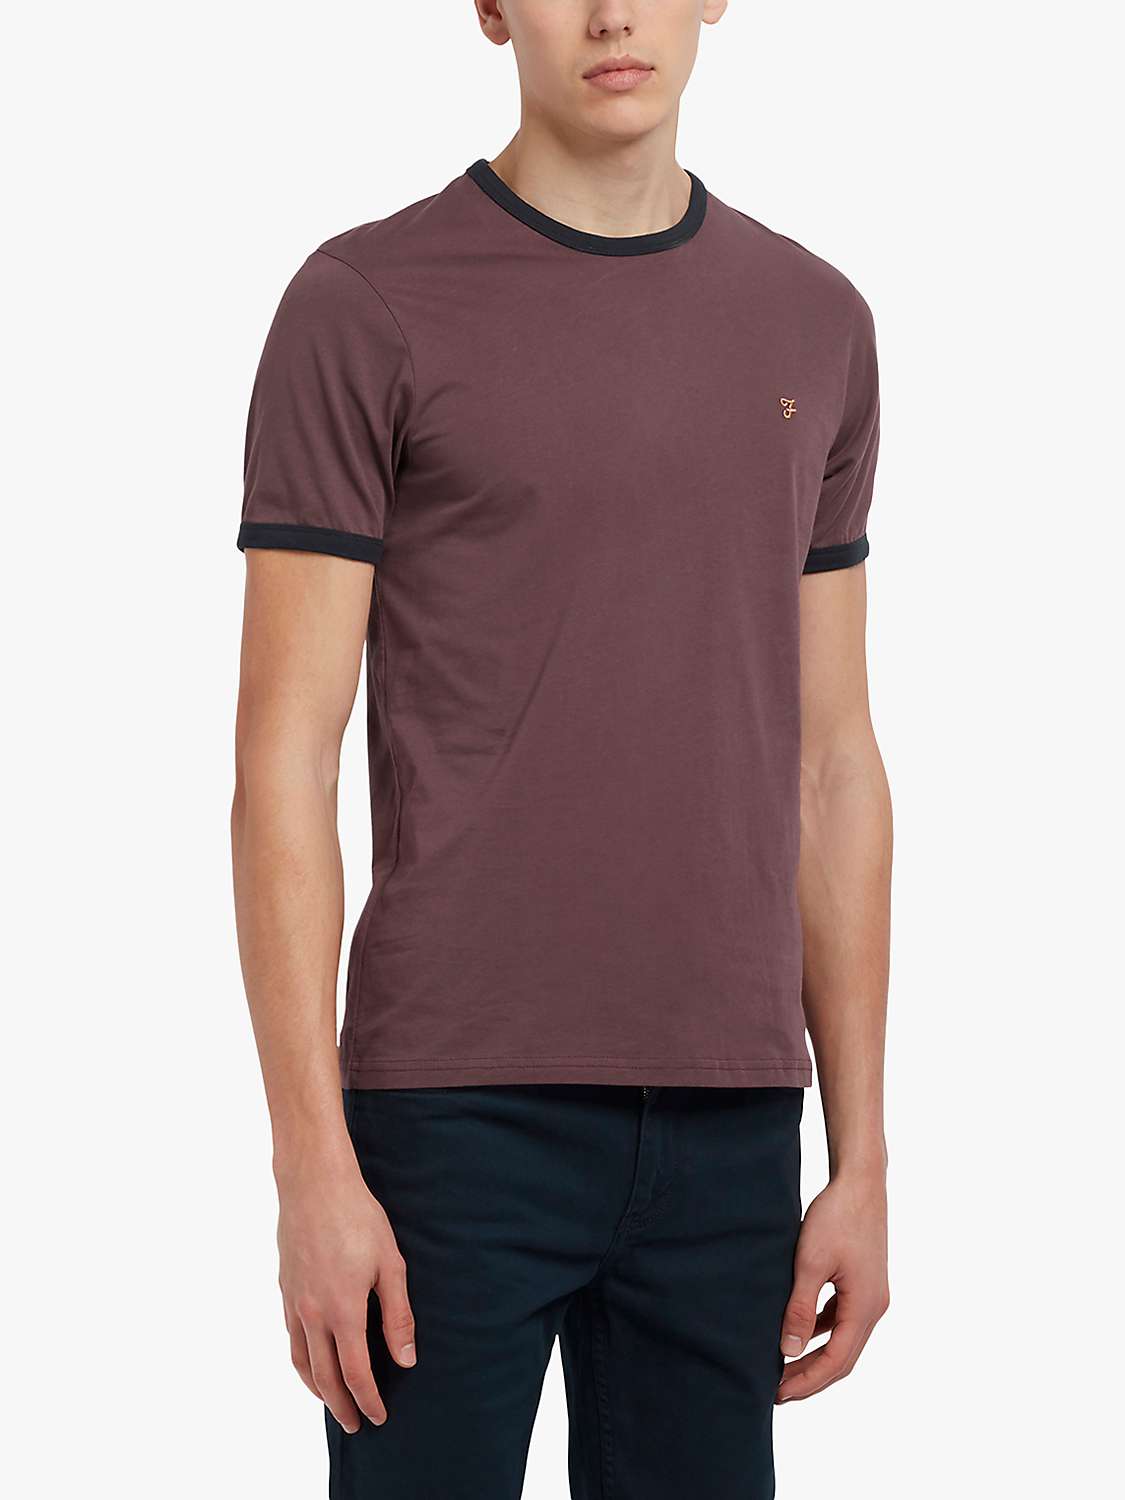 Buy Farah Groves Organic Cotton Short Sleeve Ringer T-shirt Online at johnlewis.com